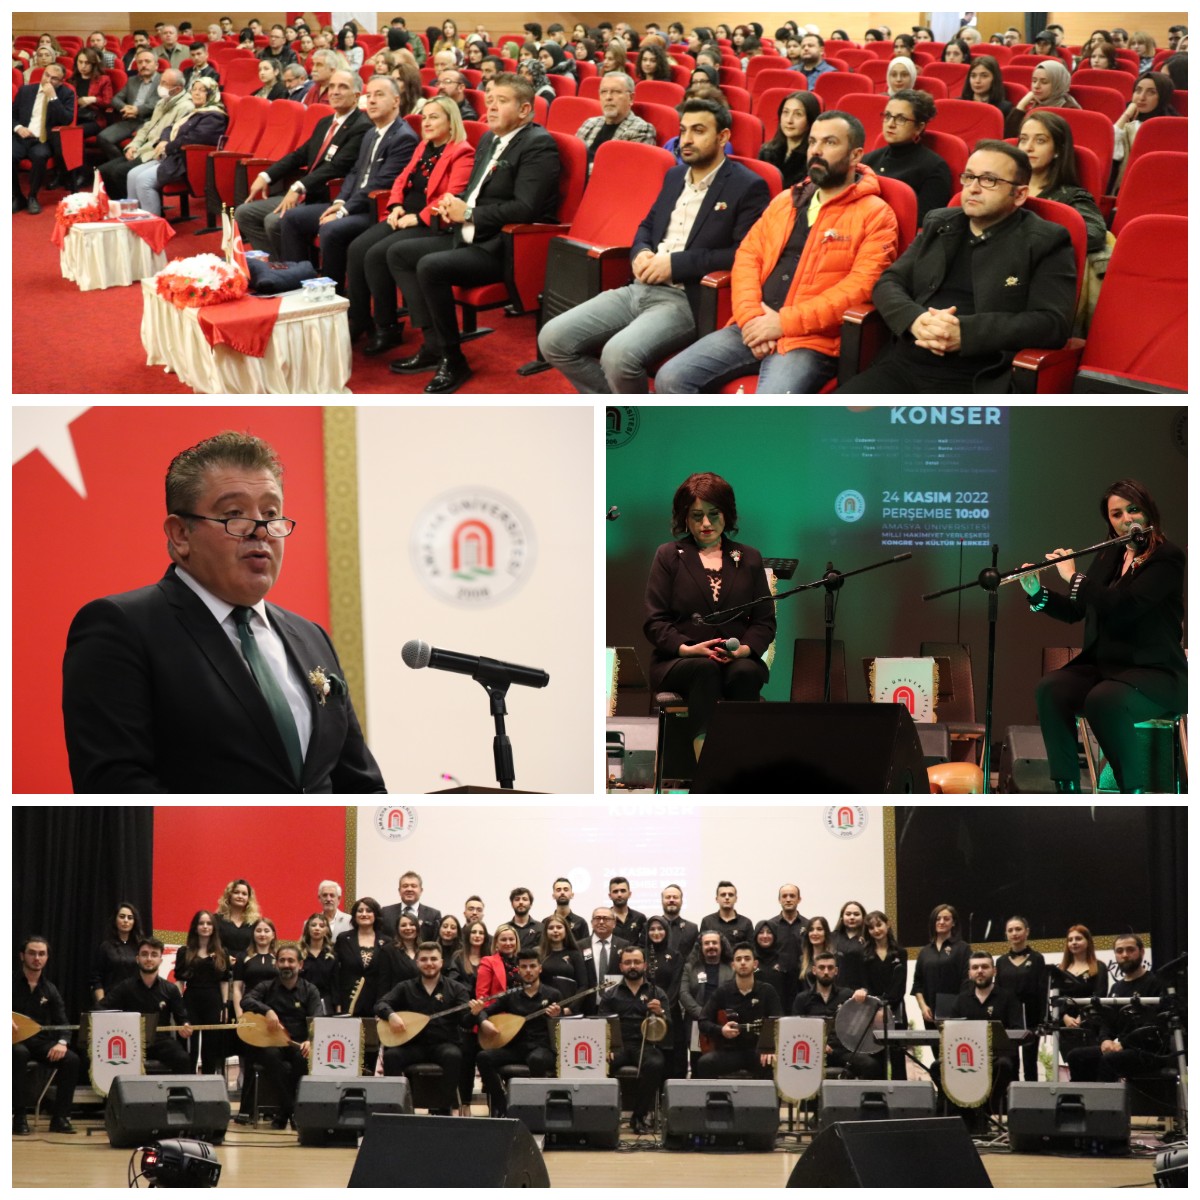 Amasya Üniversitesi Tarafından 24 Kasım Öğretmenler Günü için Resim Sergisi Ve Konser Etkinliği Düzenlendi